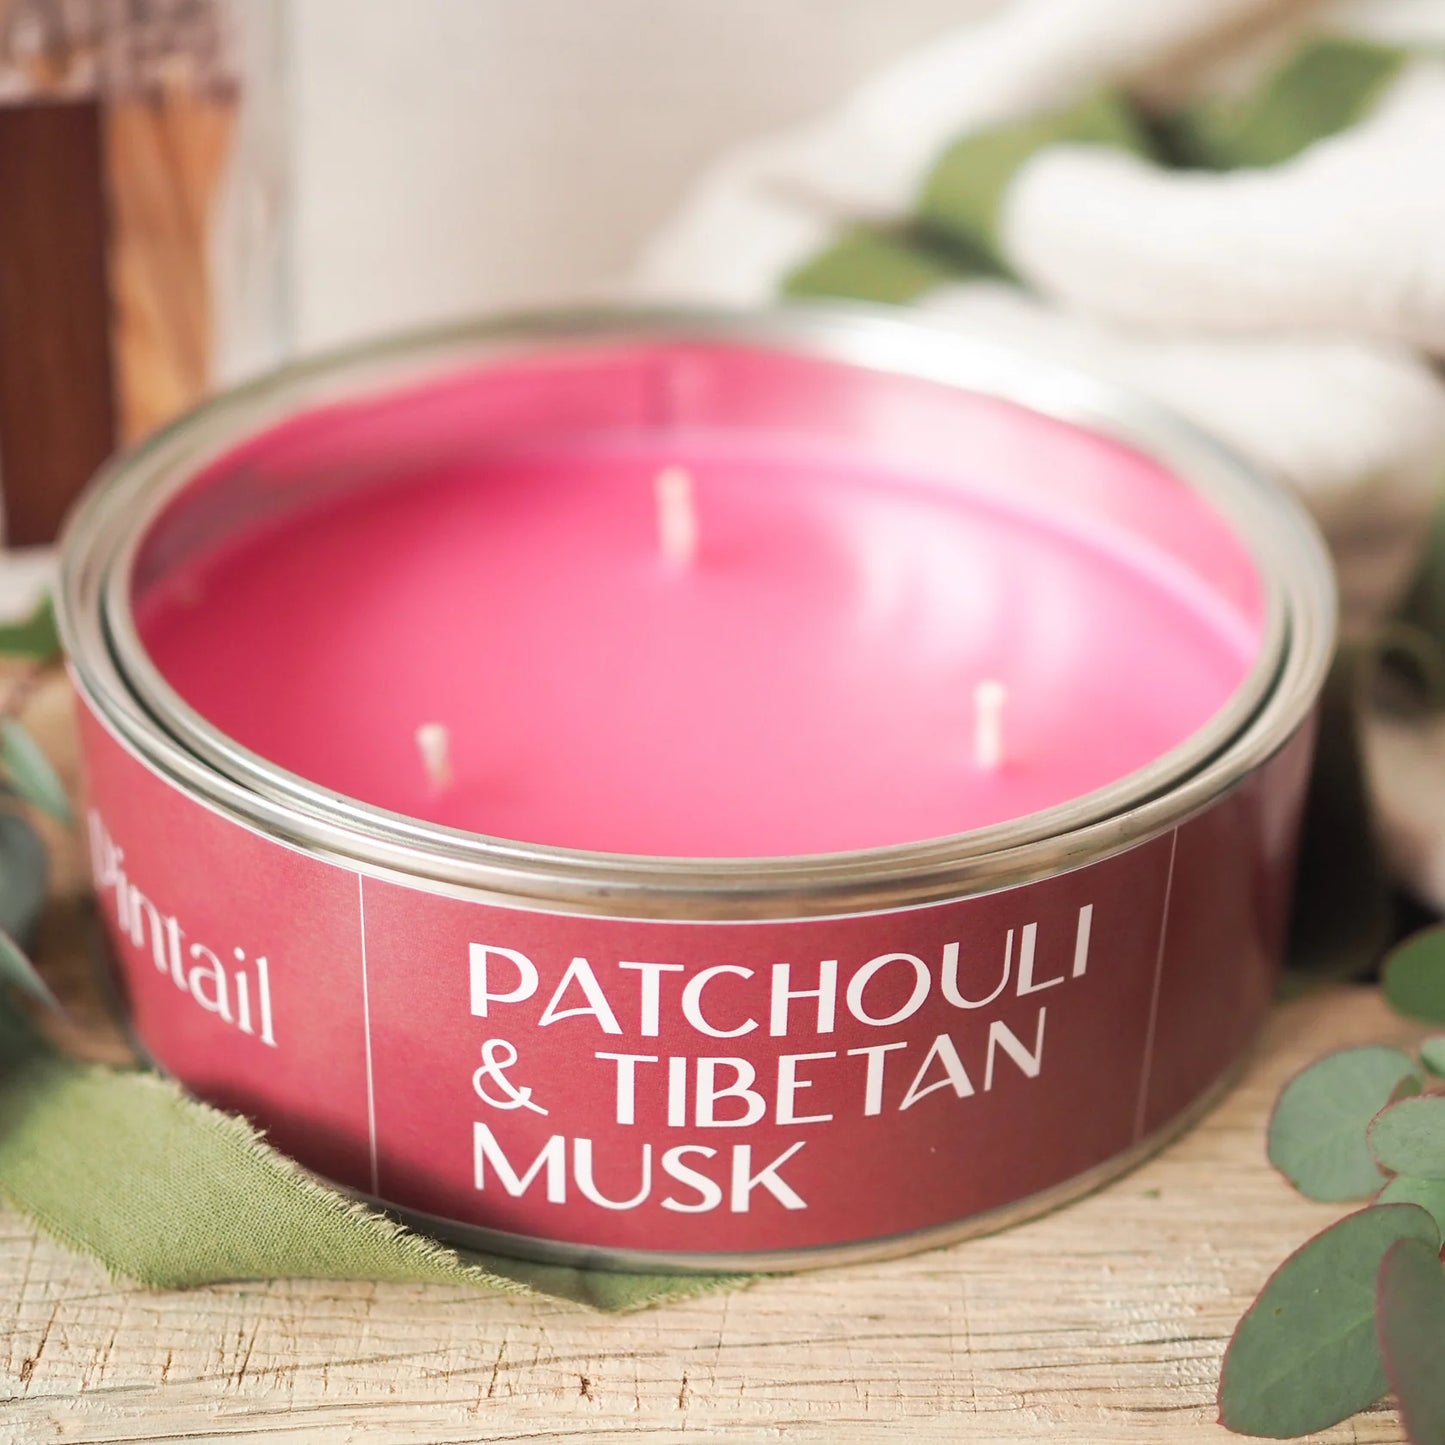 Patchouli & Tibetan Musk Candle Tin